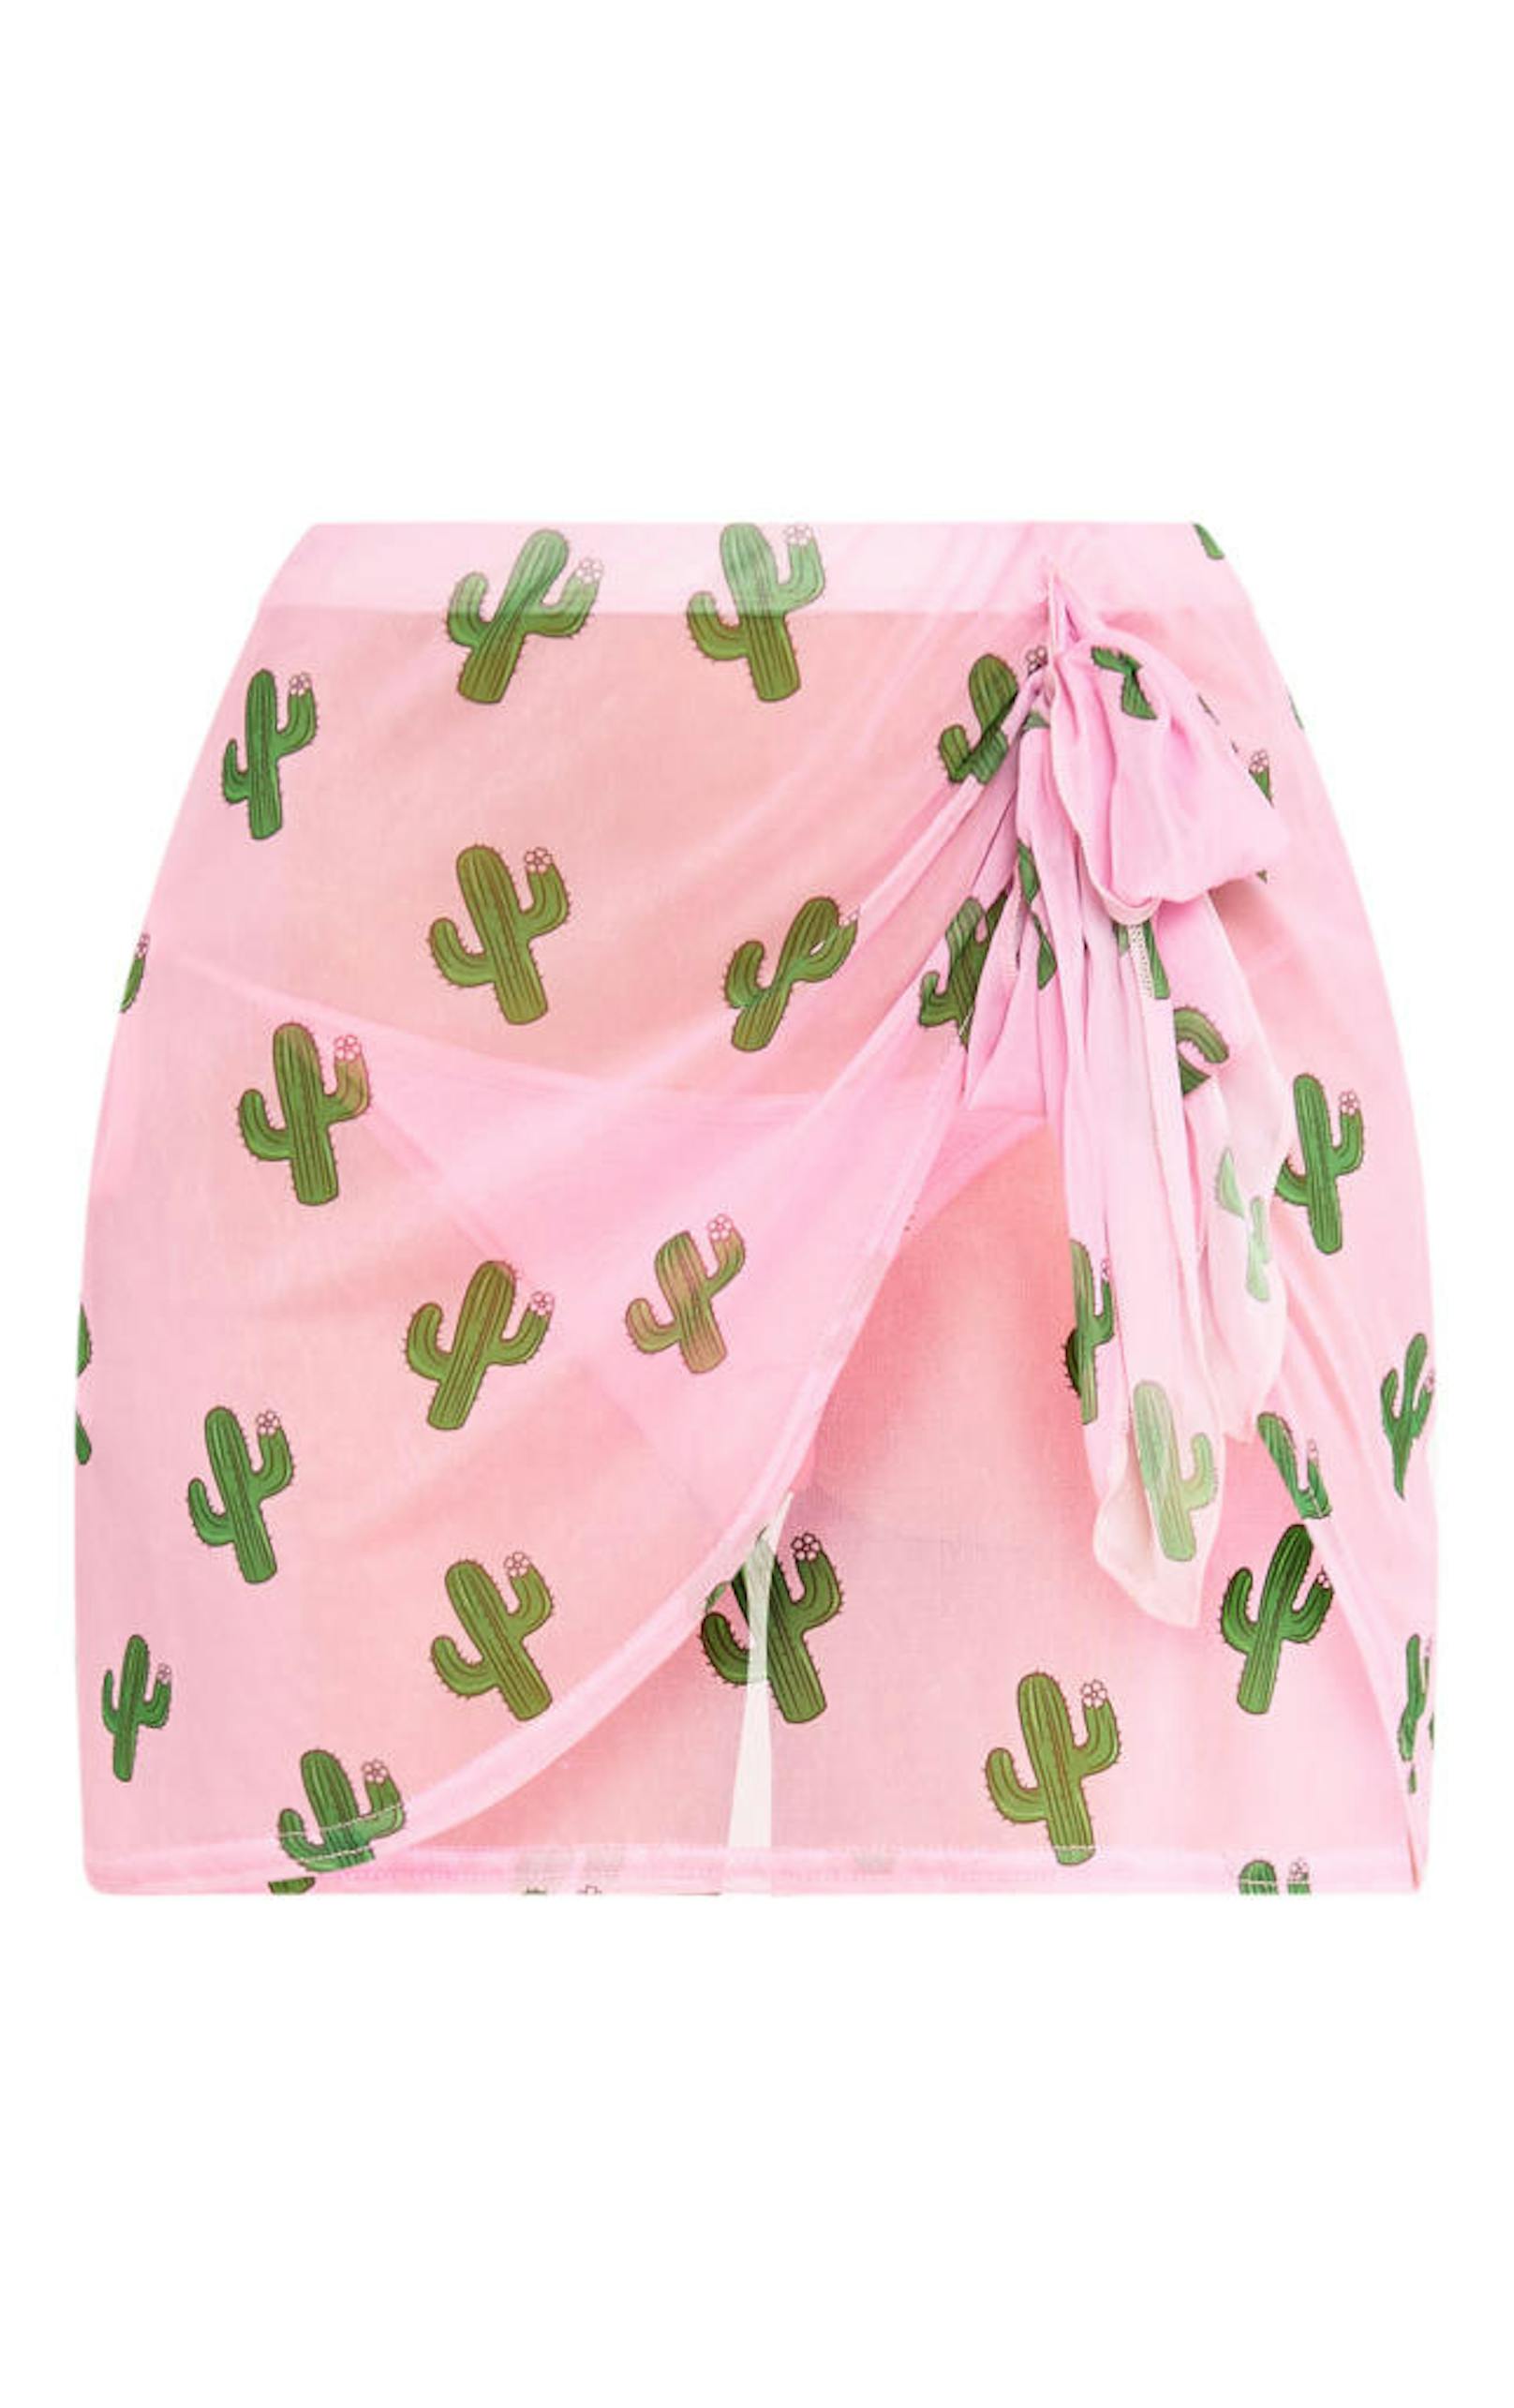 Pareo für den Strand - süßer Kaktus Print auf Pink. Gesehen bei Pretty Little Thing.